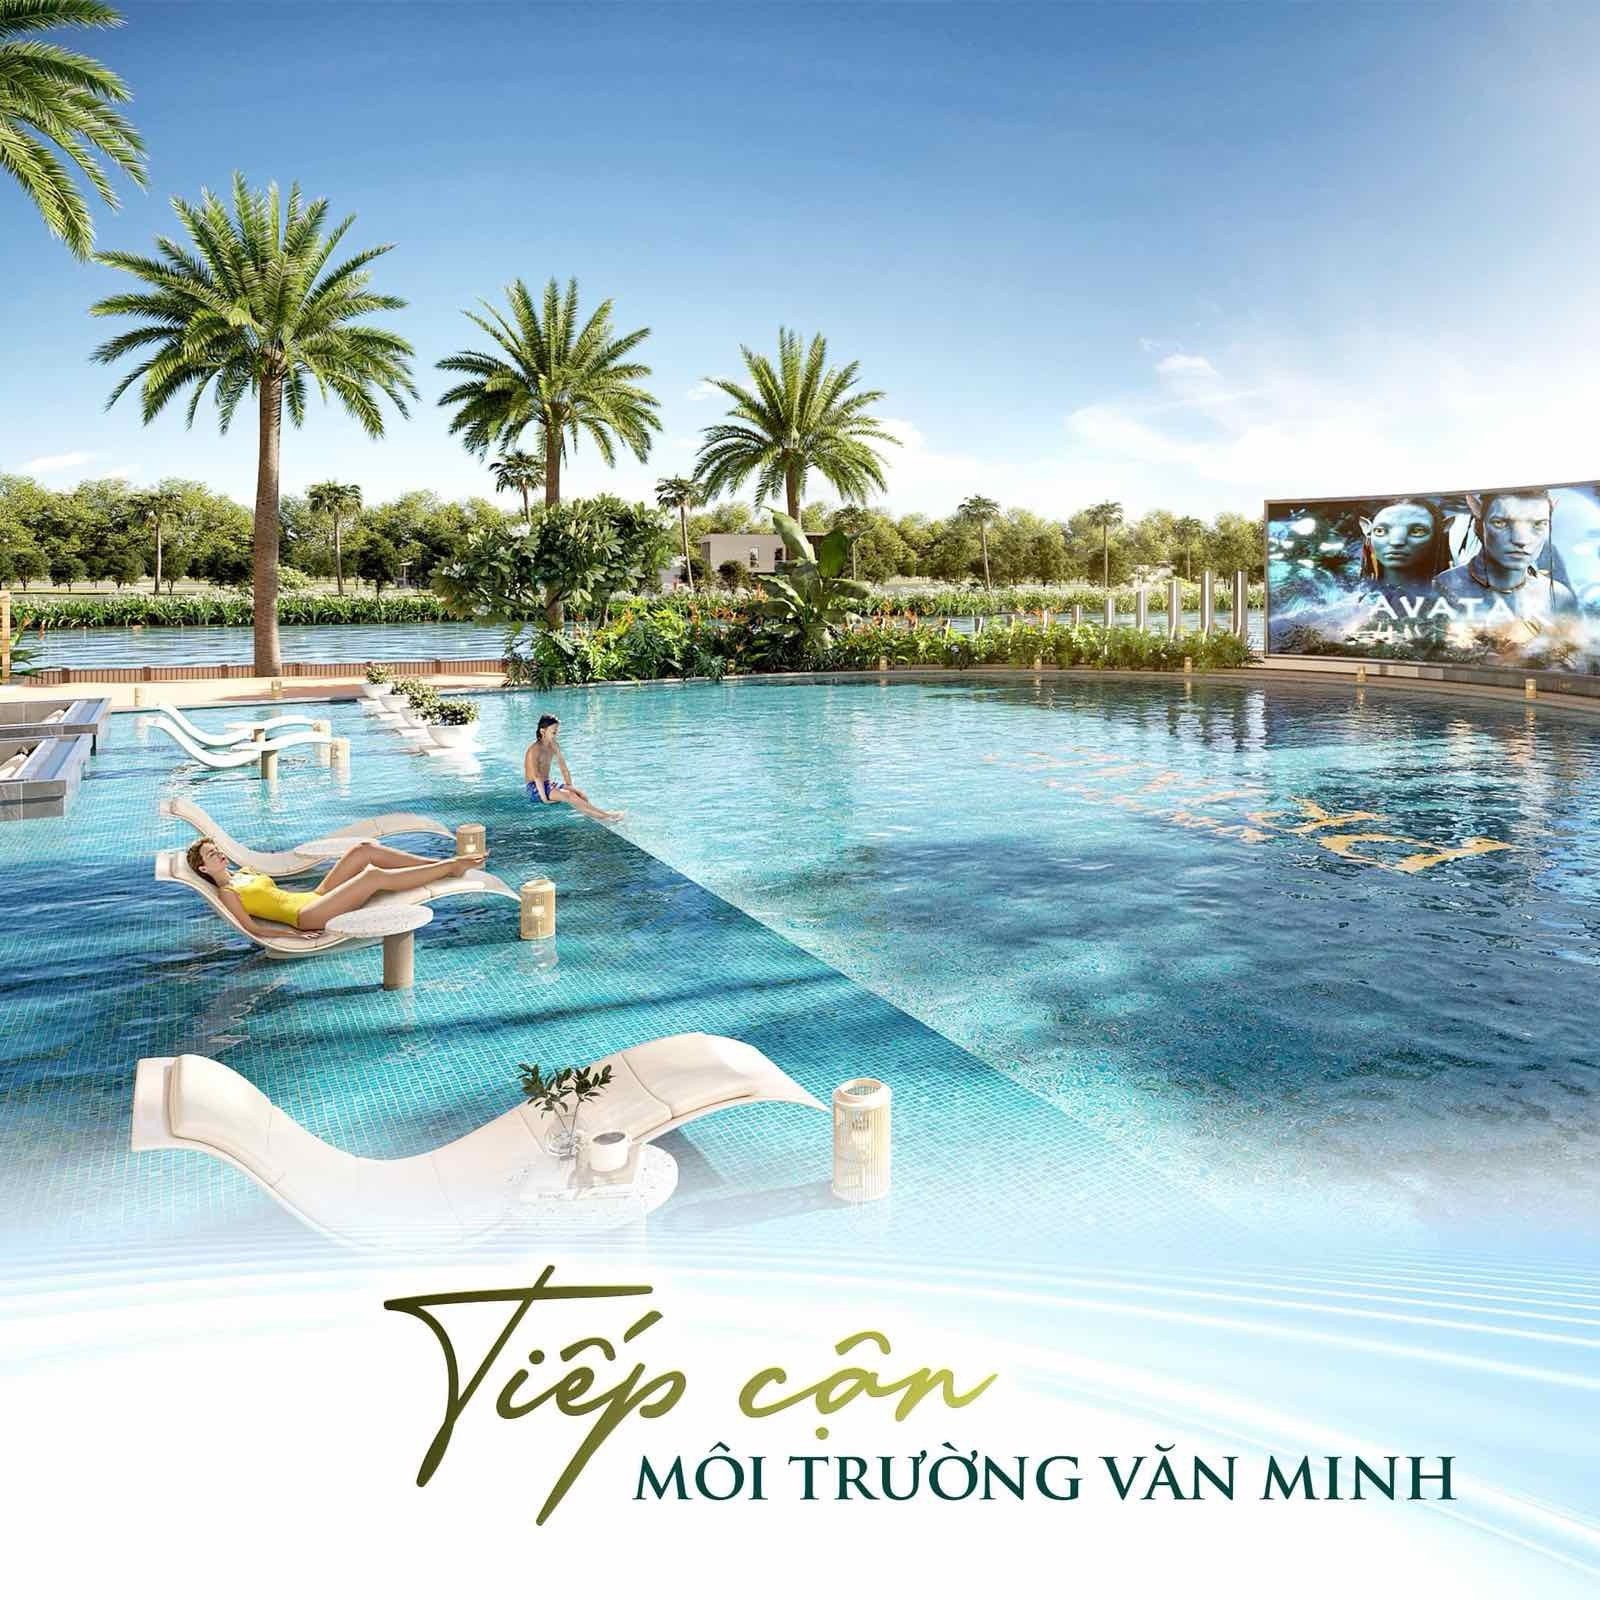 Trả trước 700 triệu Thanh Toán Linh Hoạt 0.5%/Tháng, Hỗ Trợ Lên Đến 8 Năm 2